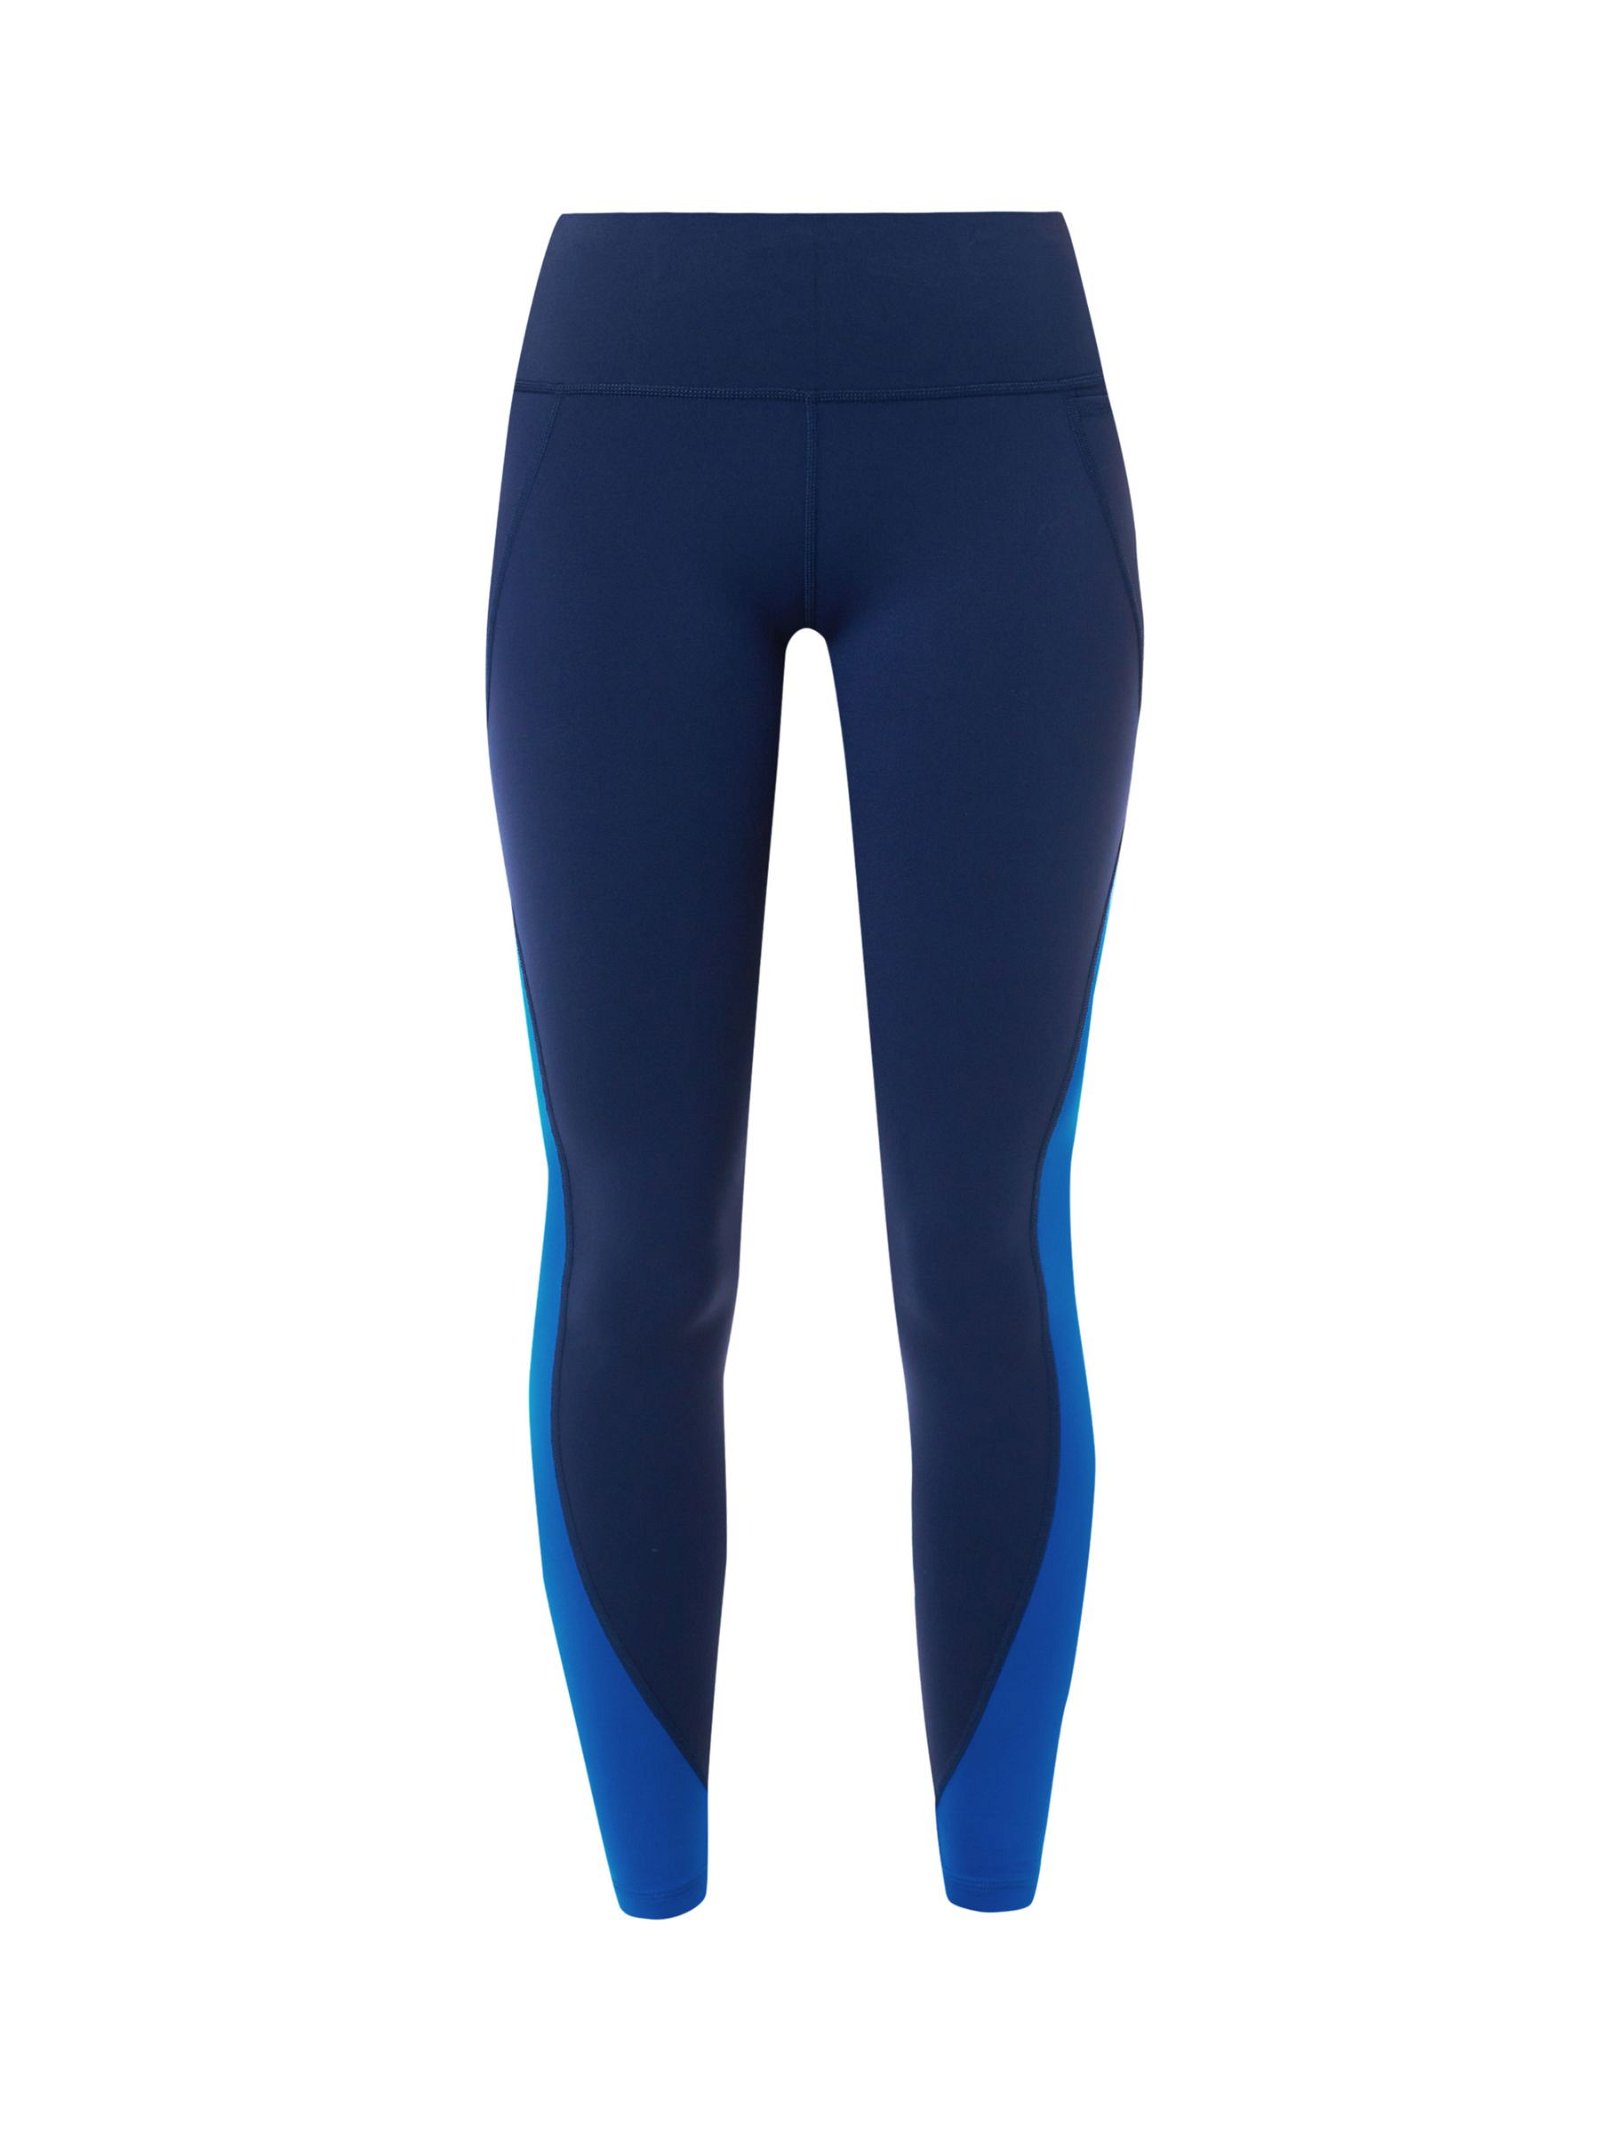 Power 7/8 Workout Colour Curve Leggings - Navy Blue, Women's Leggings